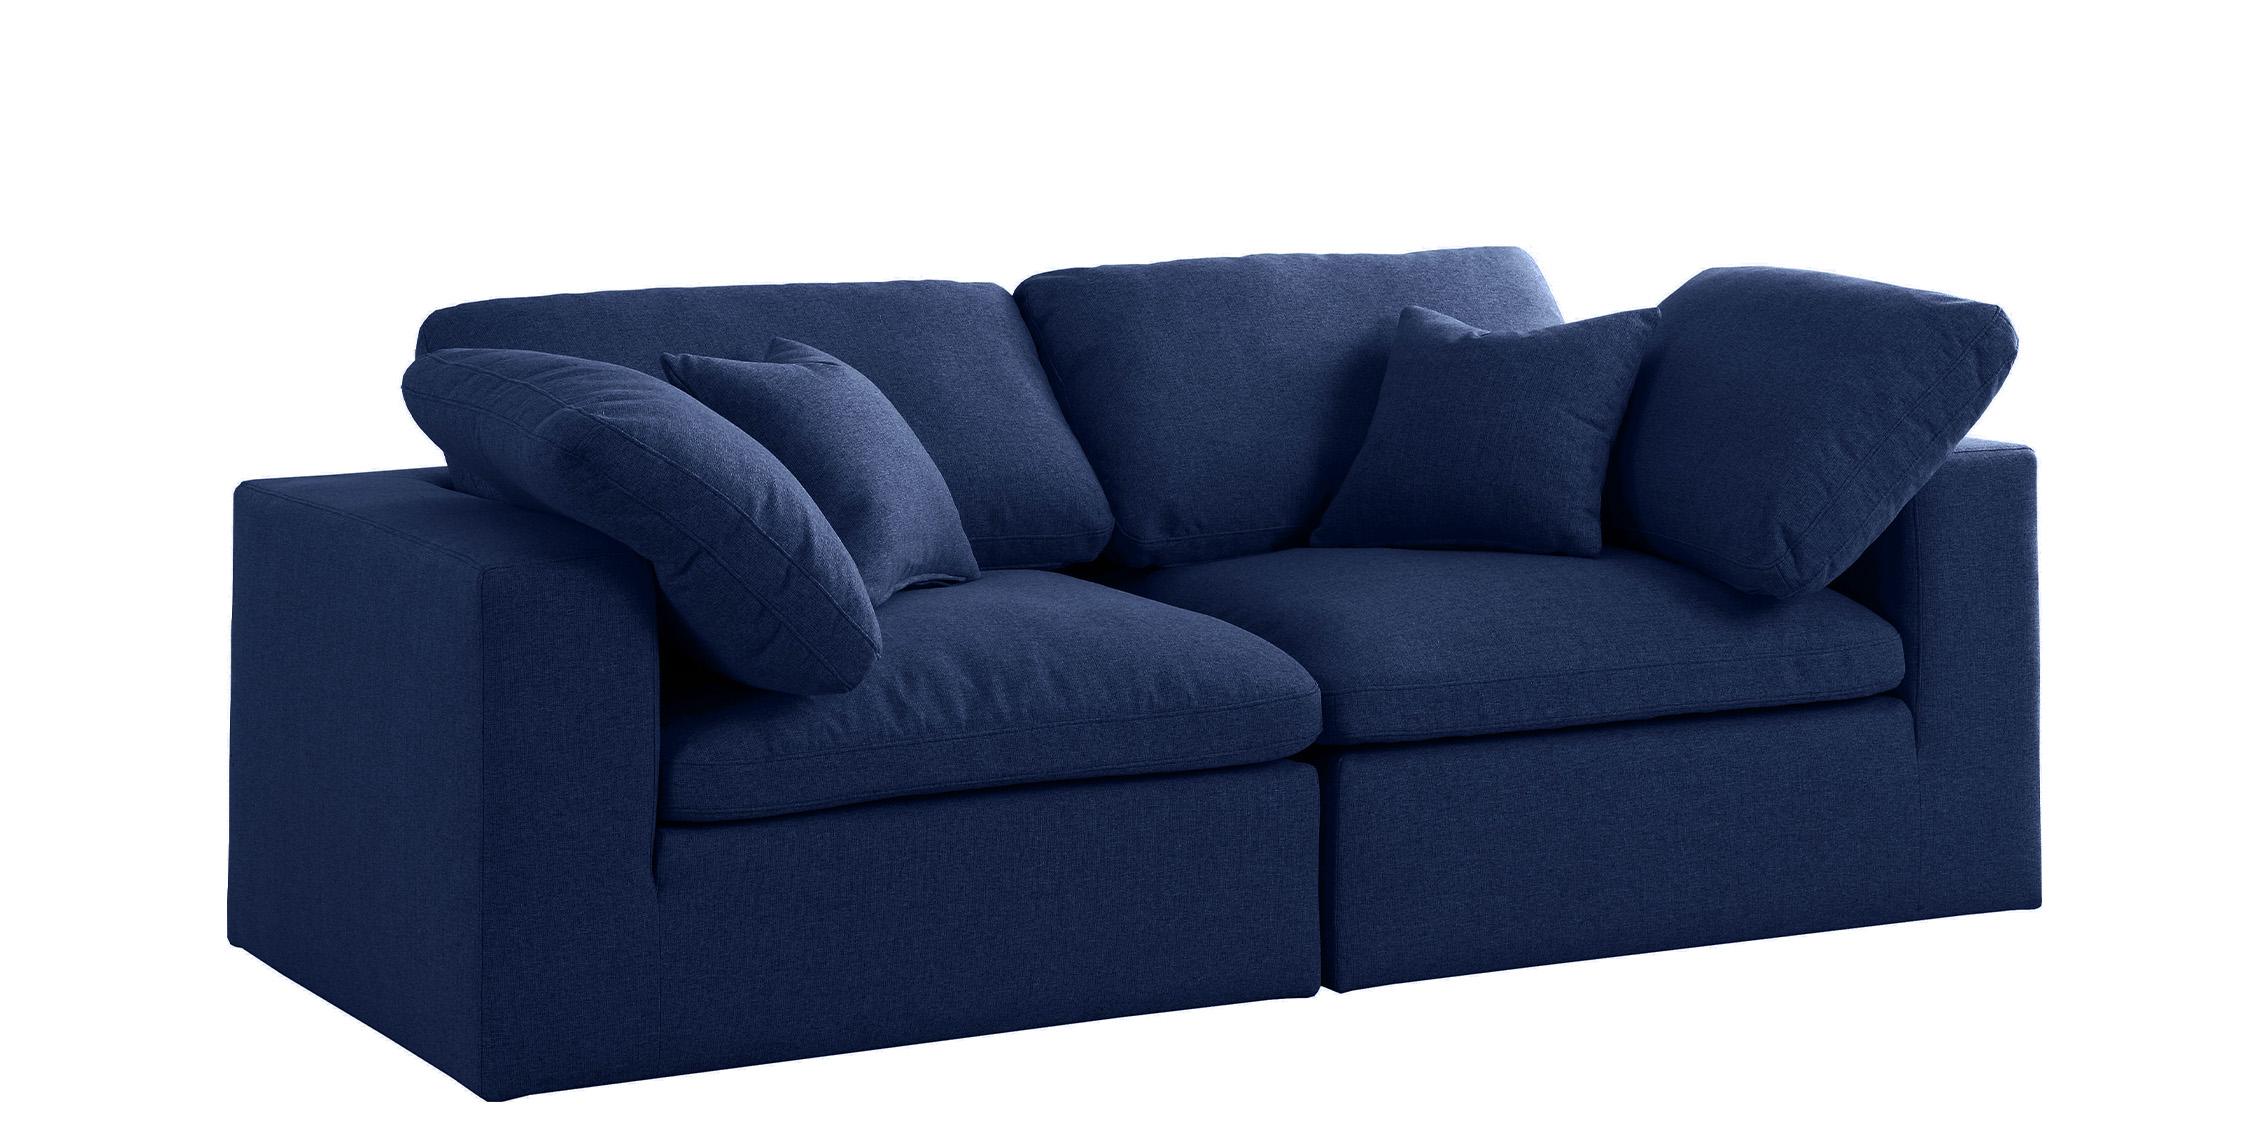 

    
Serene Navy Linen Textured Fabric Deluxe Comfort Modular Sofa S80 Meridian
